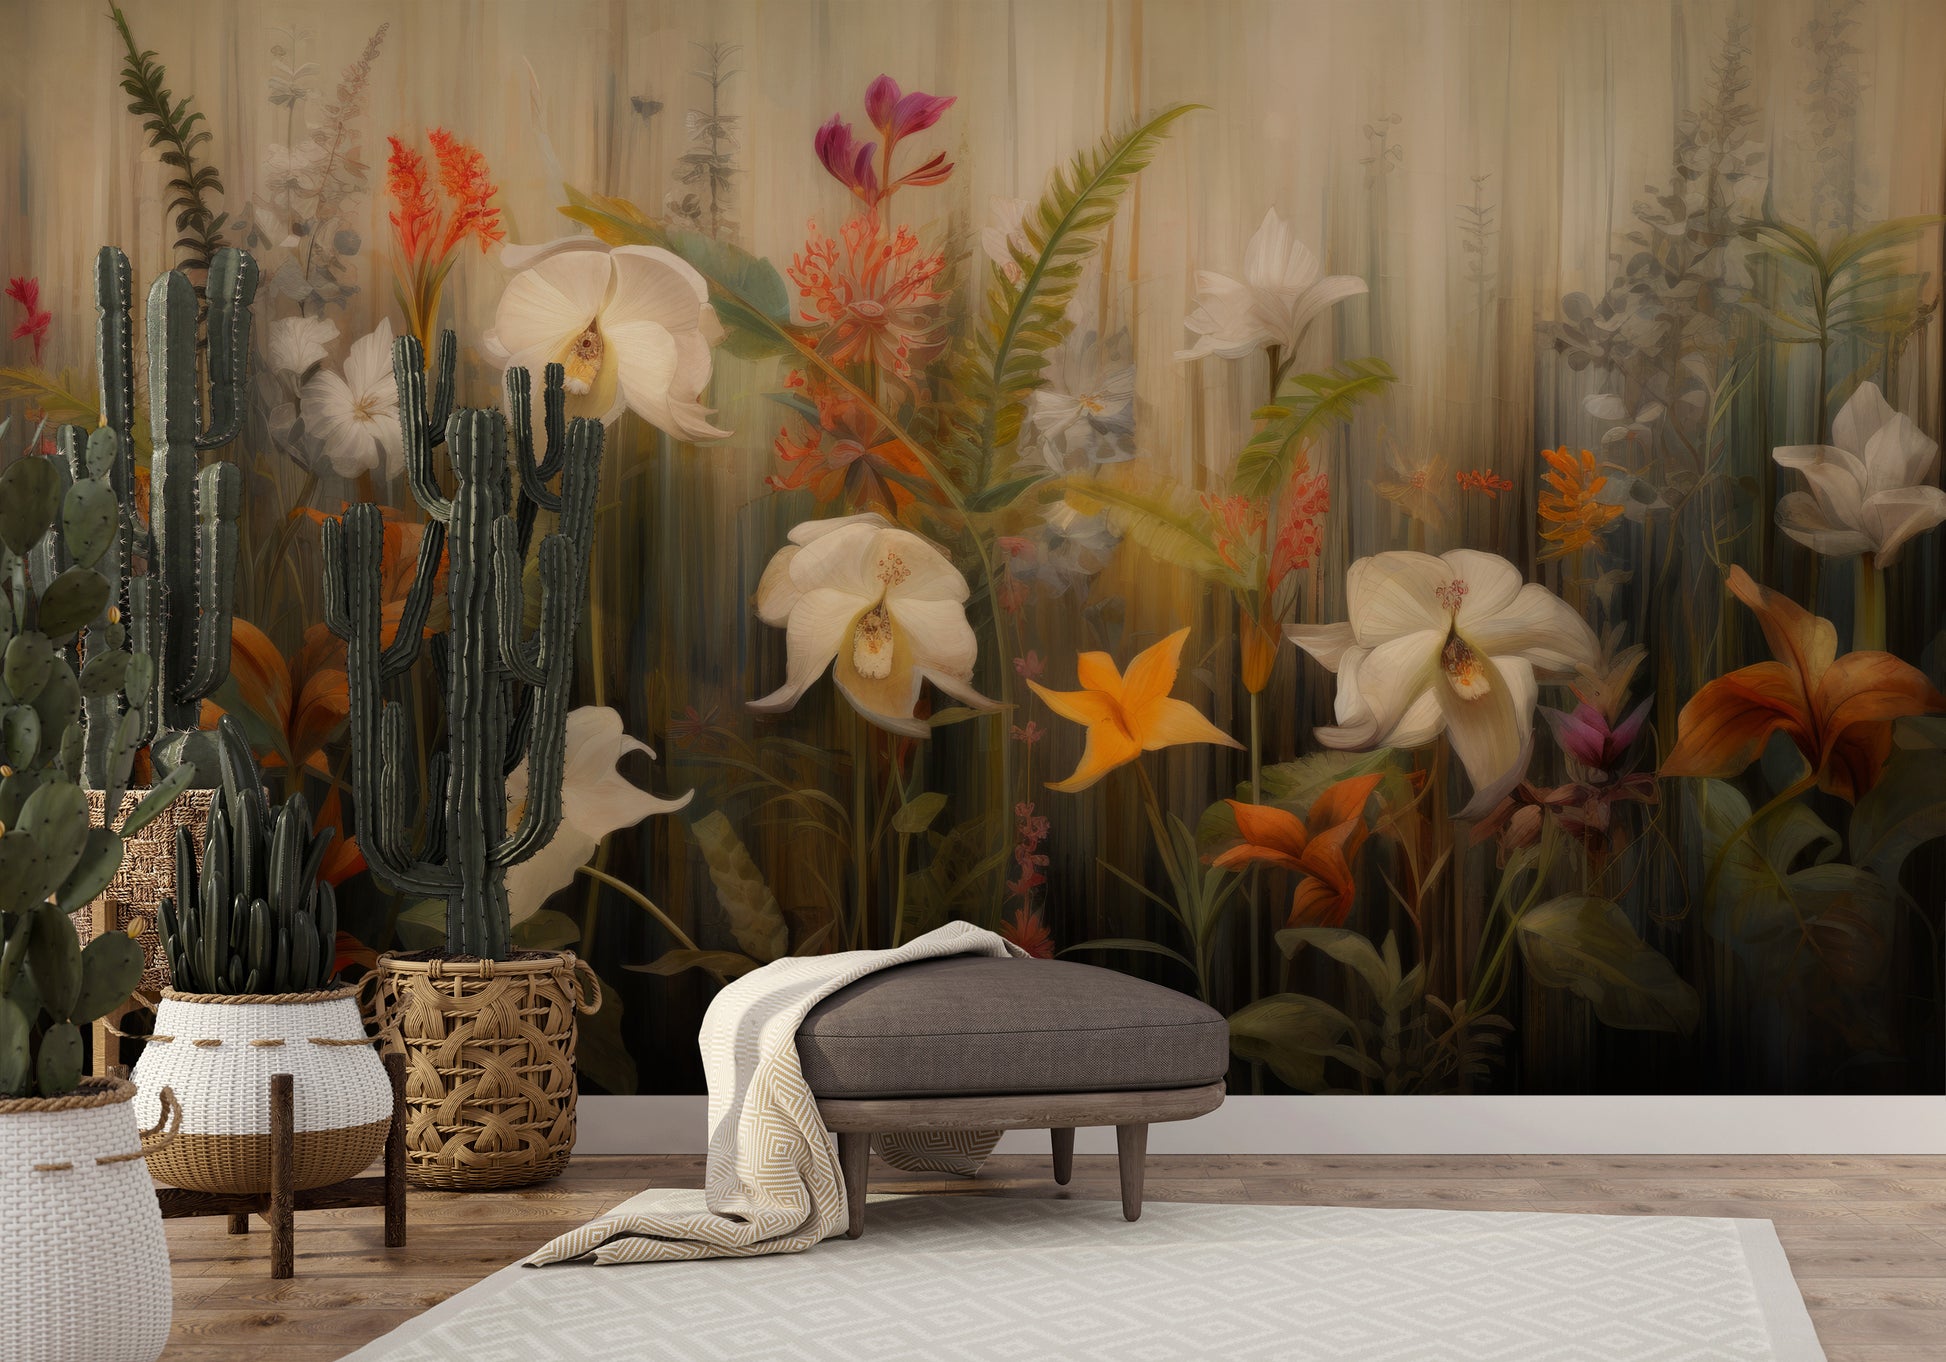 Wzór fototapety o nazwie Exotic Garden Serenity pokazanej w kontekście pomieszczenia.